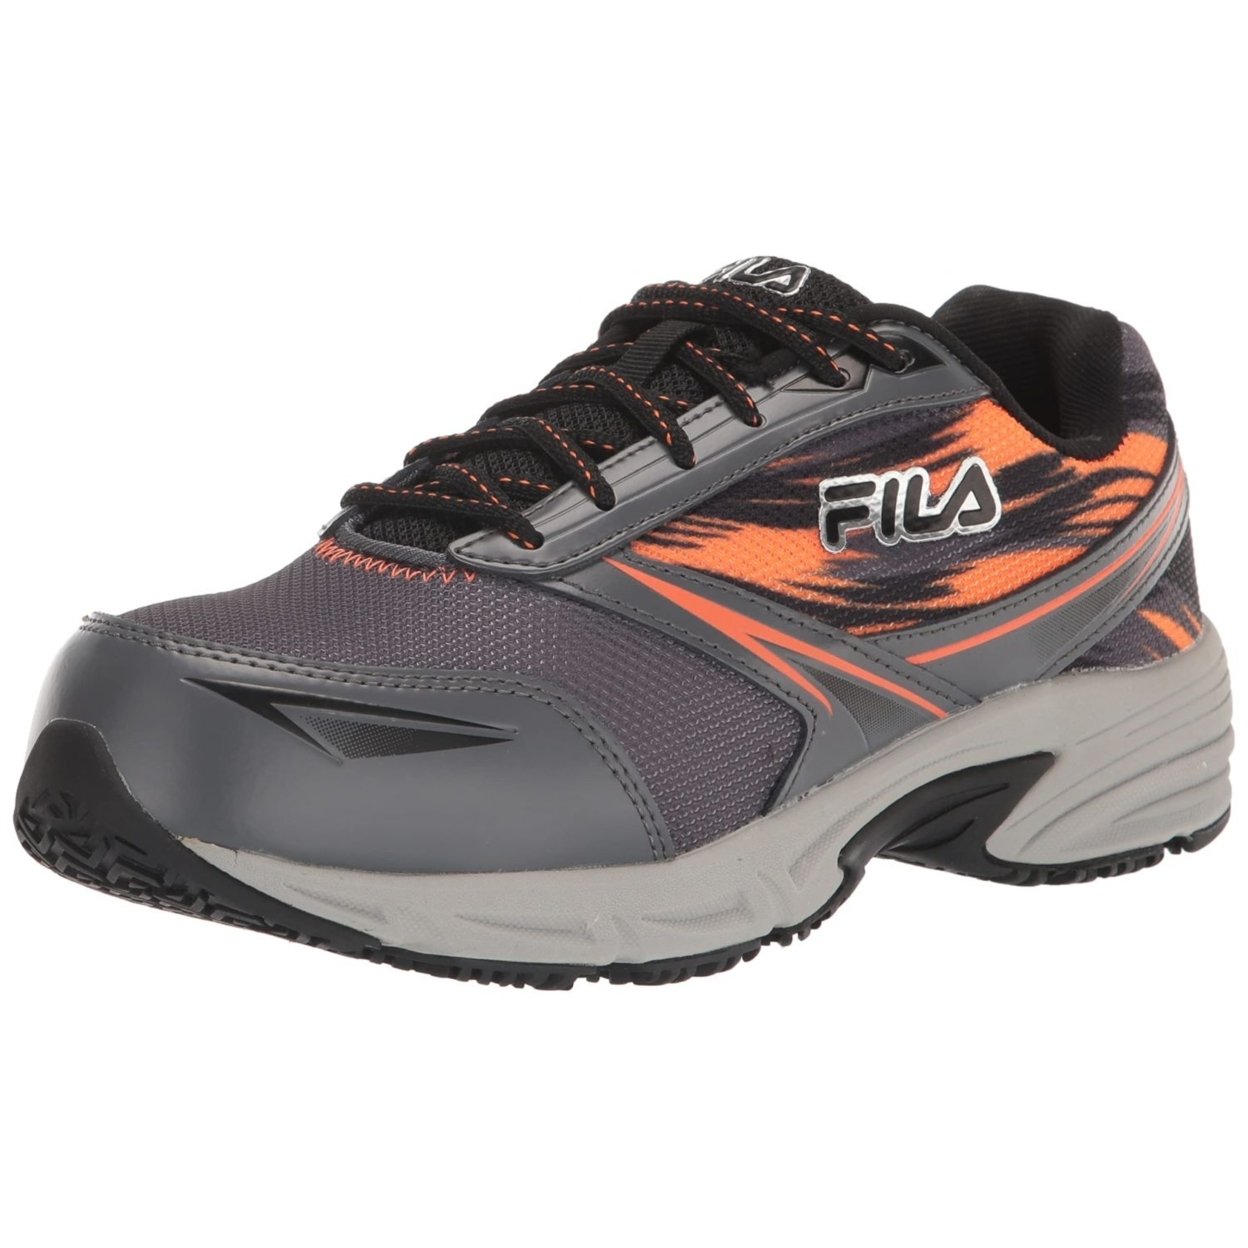 Fila Menâs Memory Meiera 2 Slip Resistant And Composite Toe Work Shoe CSRK/BLK/VORN - Castlerock/Black/Vibrant Orange, 10